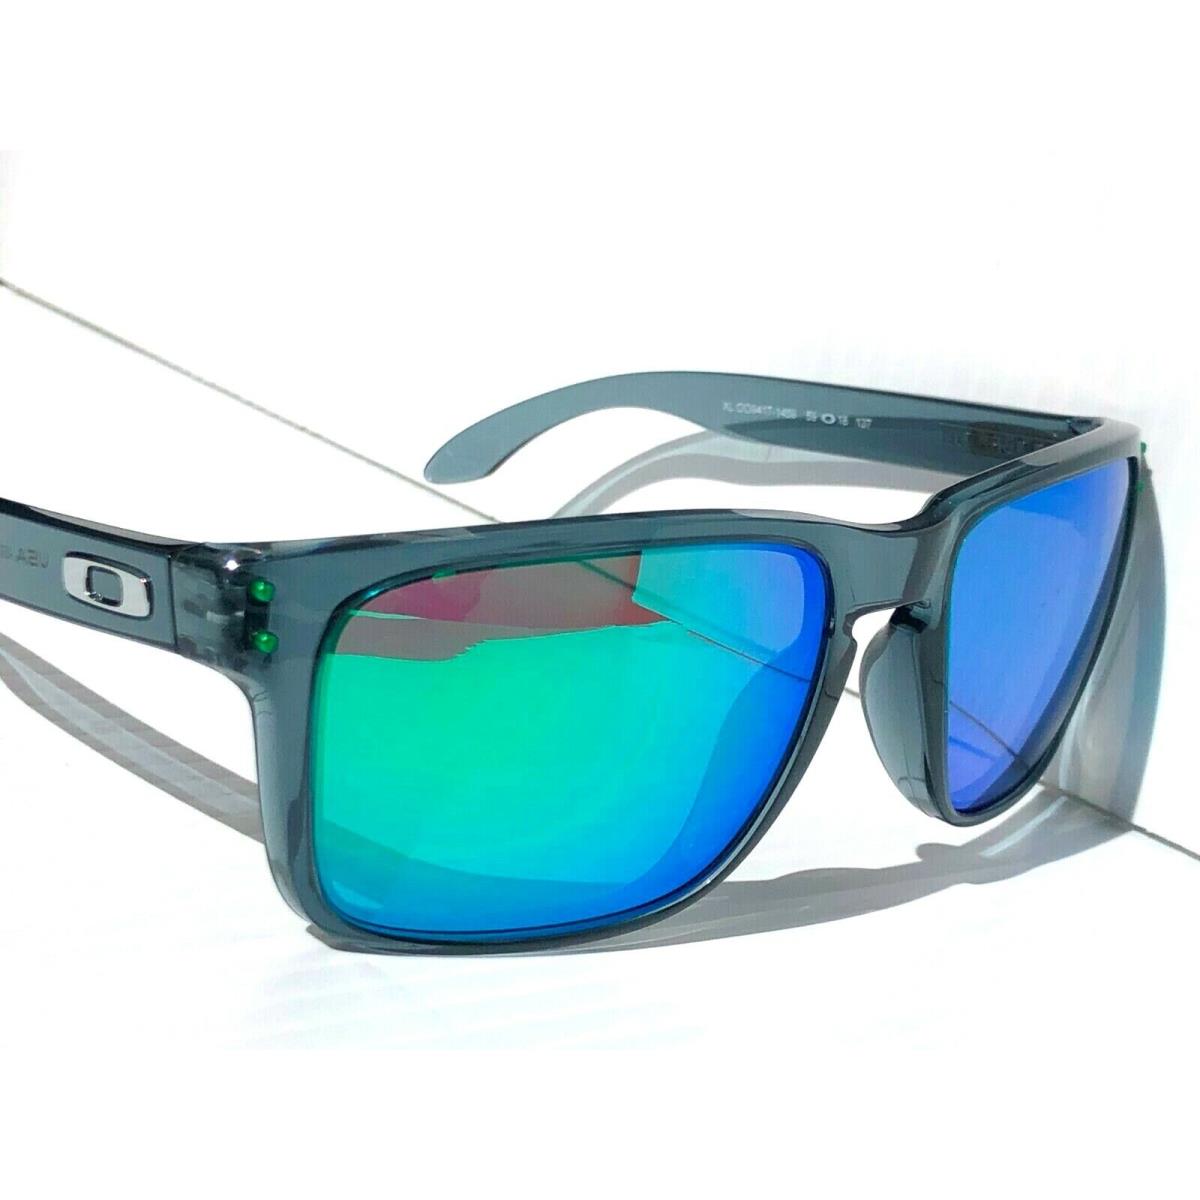 Oakley sunglasses Holbrook - Gray Frame, Green Lens